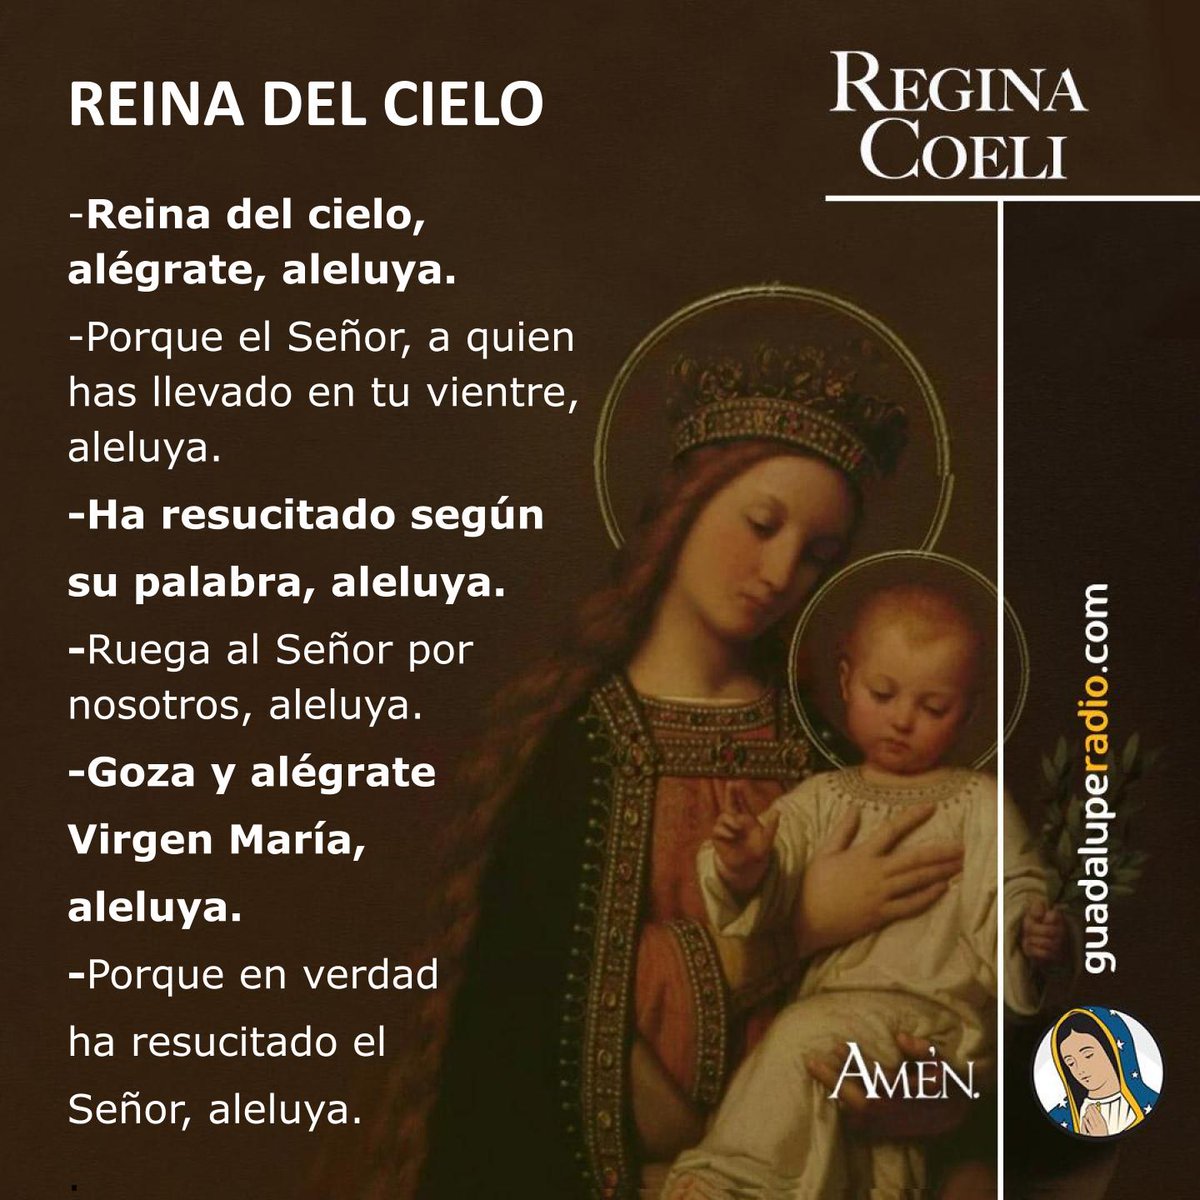 ¡El Señor resucitó según su palabra!
#ReginaCoeli
#GuadalupeRadio